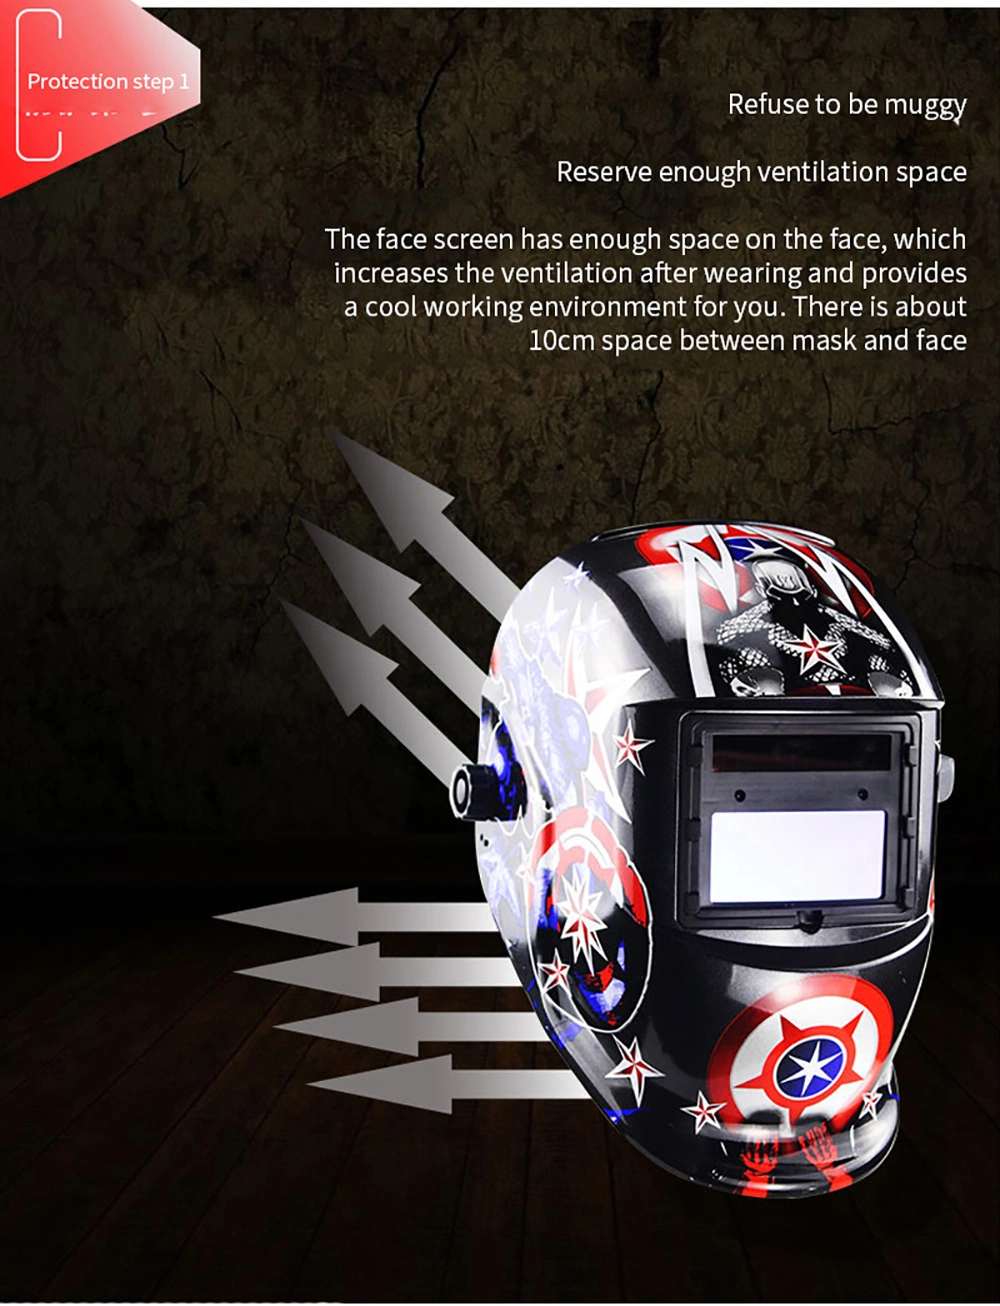 Certificated True Color Auto Darkening Solar Powered Welding Helmet with Grind Weld Function